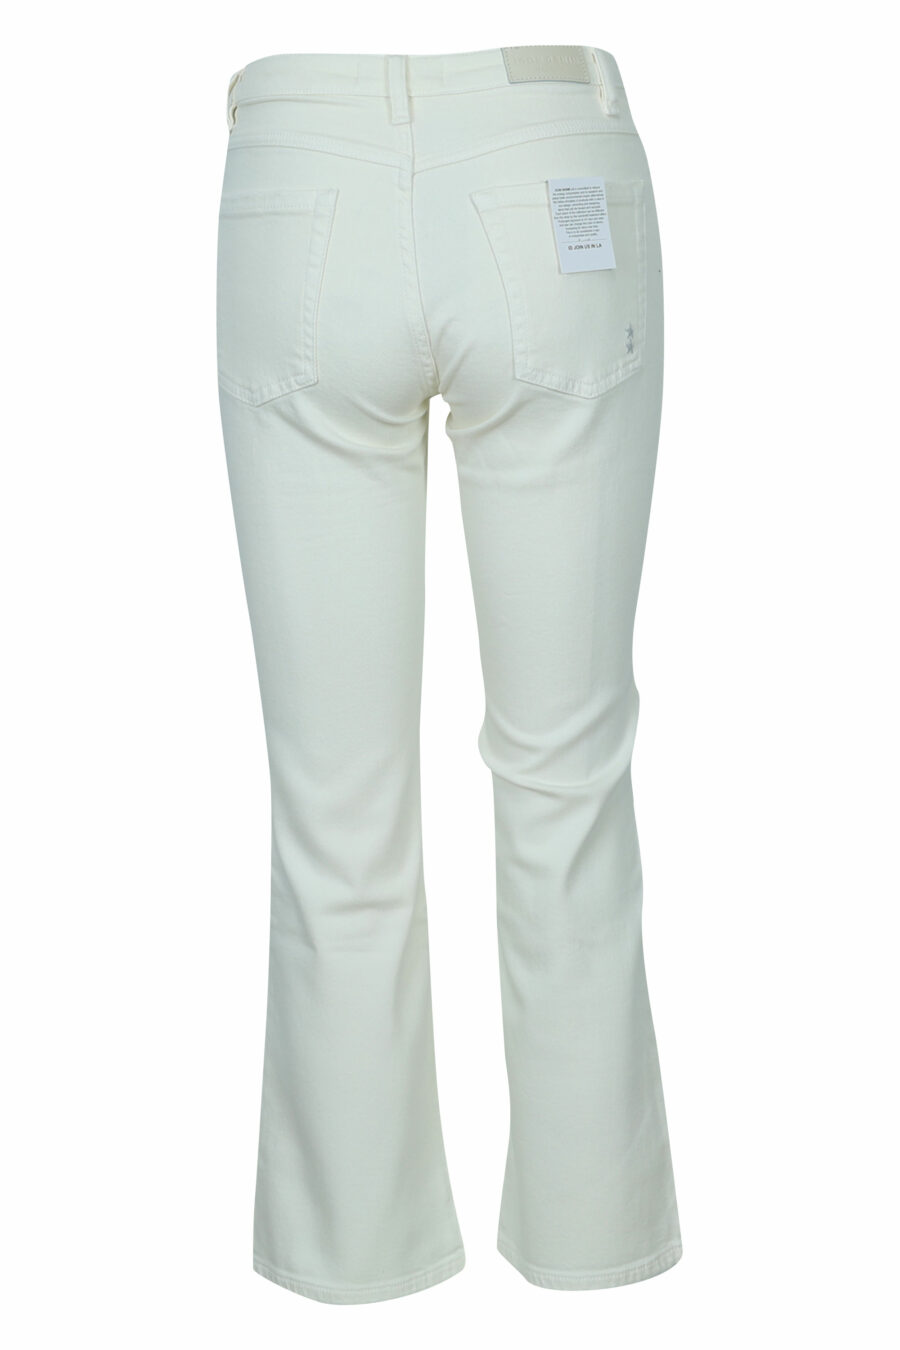 Pantalón blanco crema "Pam" con bota ancha - 8059772787895 1